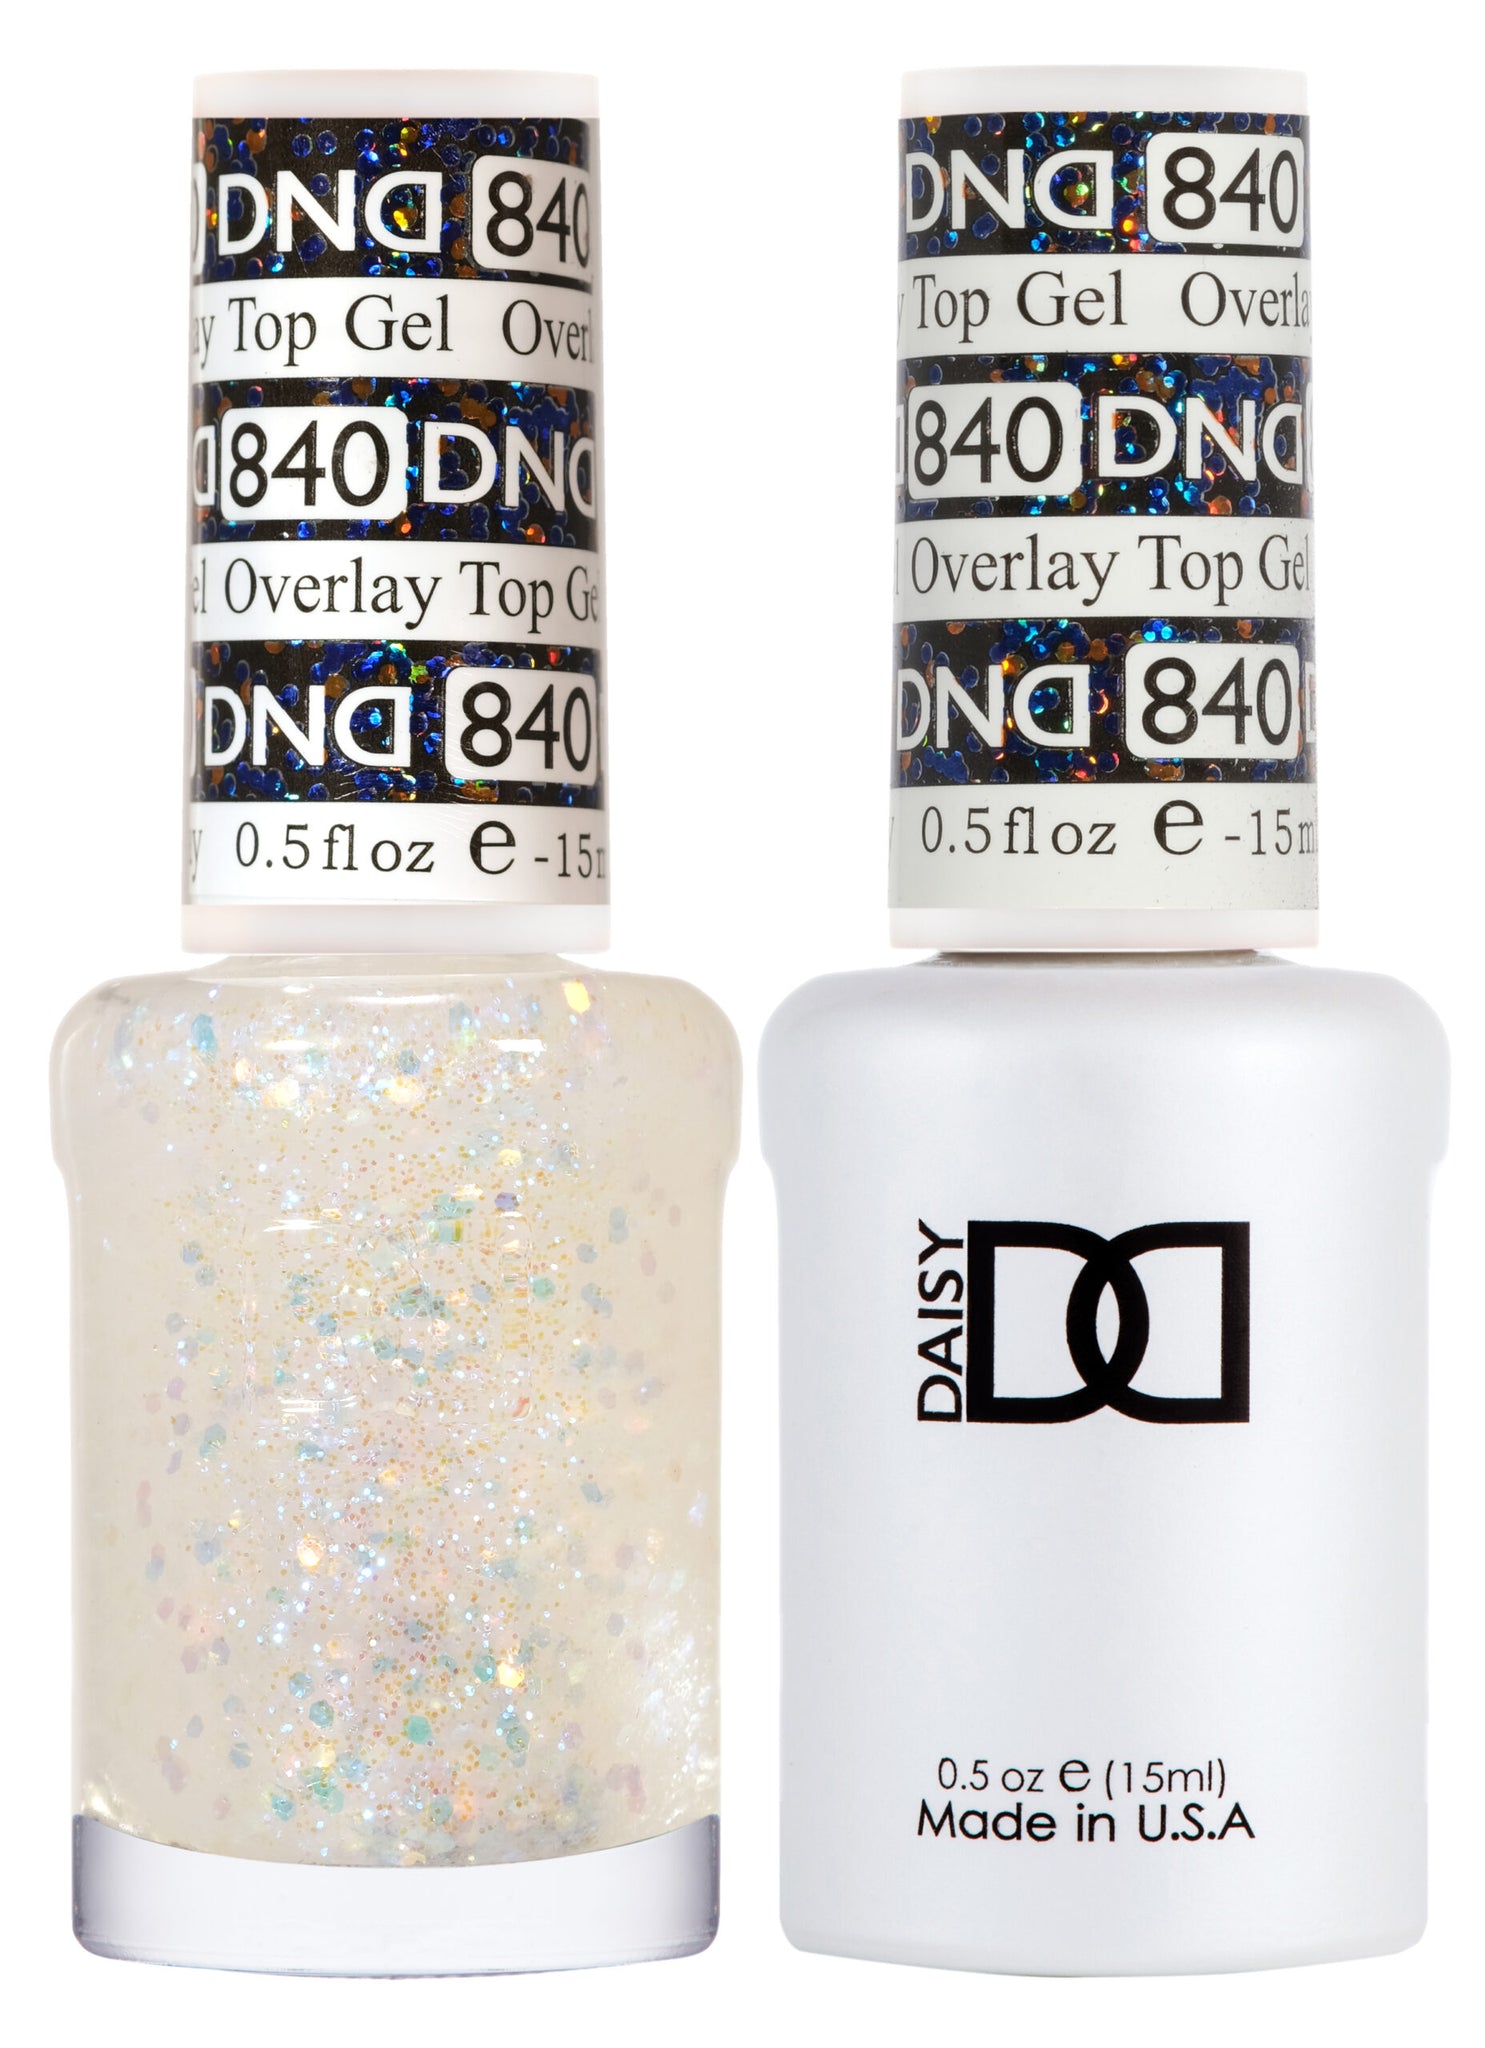 DND - Overlay Top Gel - Duo - #840